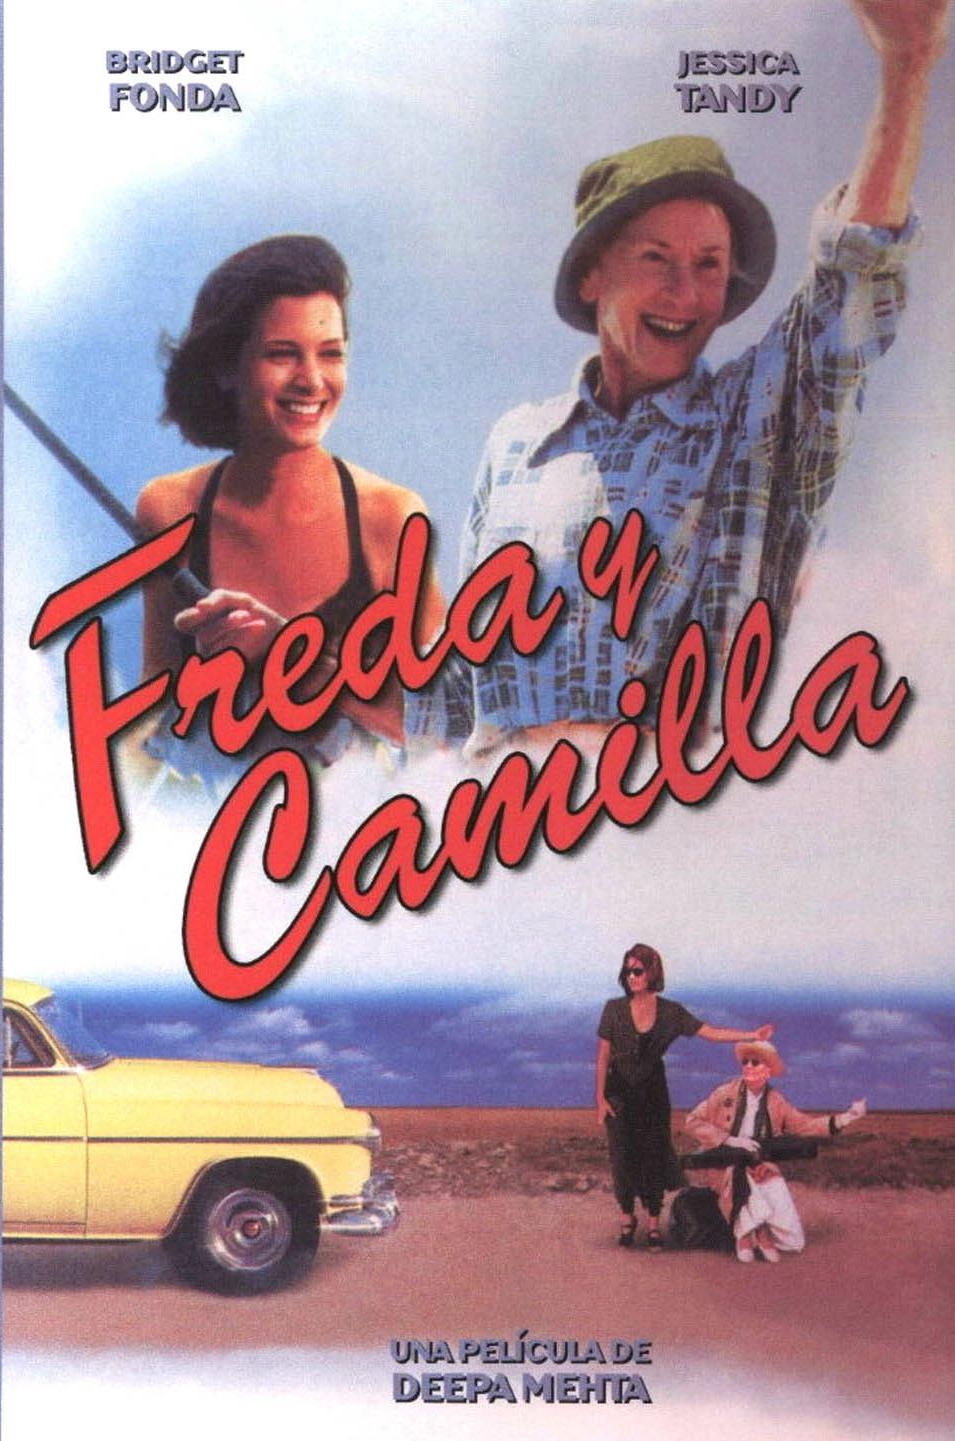 Freda y Camilla